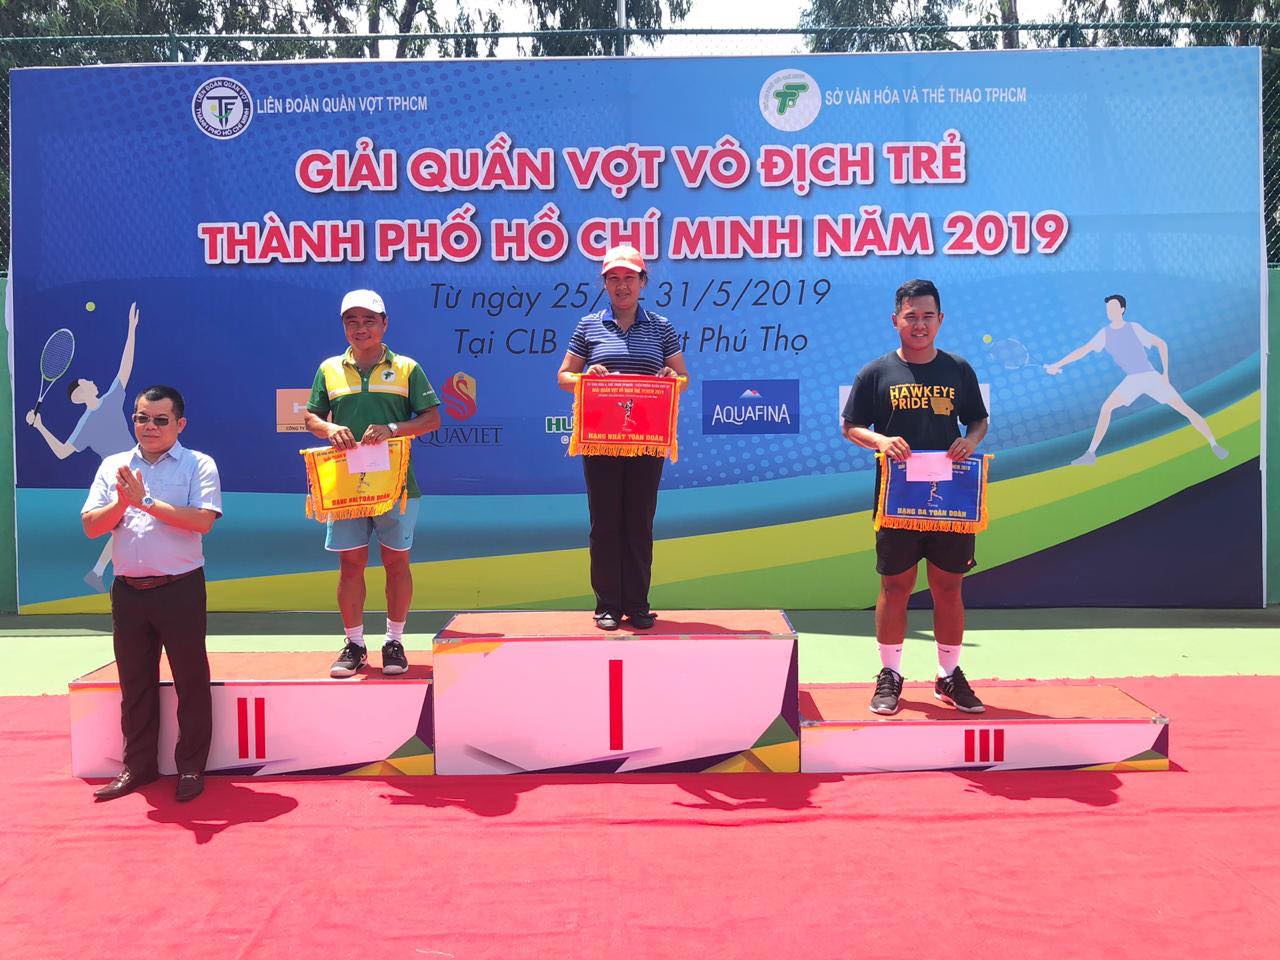 Quận Phú Nhuận nhất toàn đoàn Giải quần vợt vô địch trẻ TP.HCM năm 2019